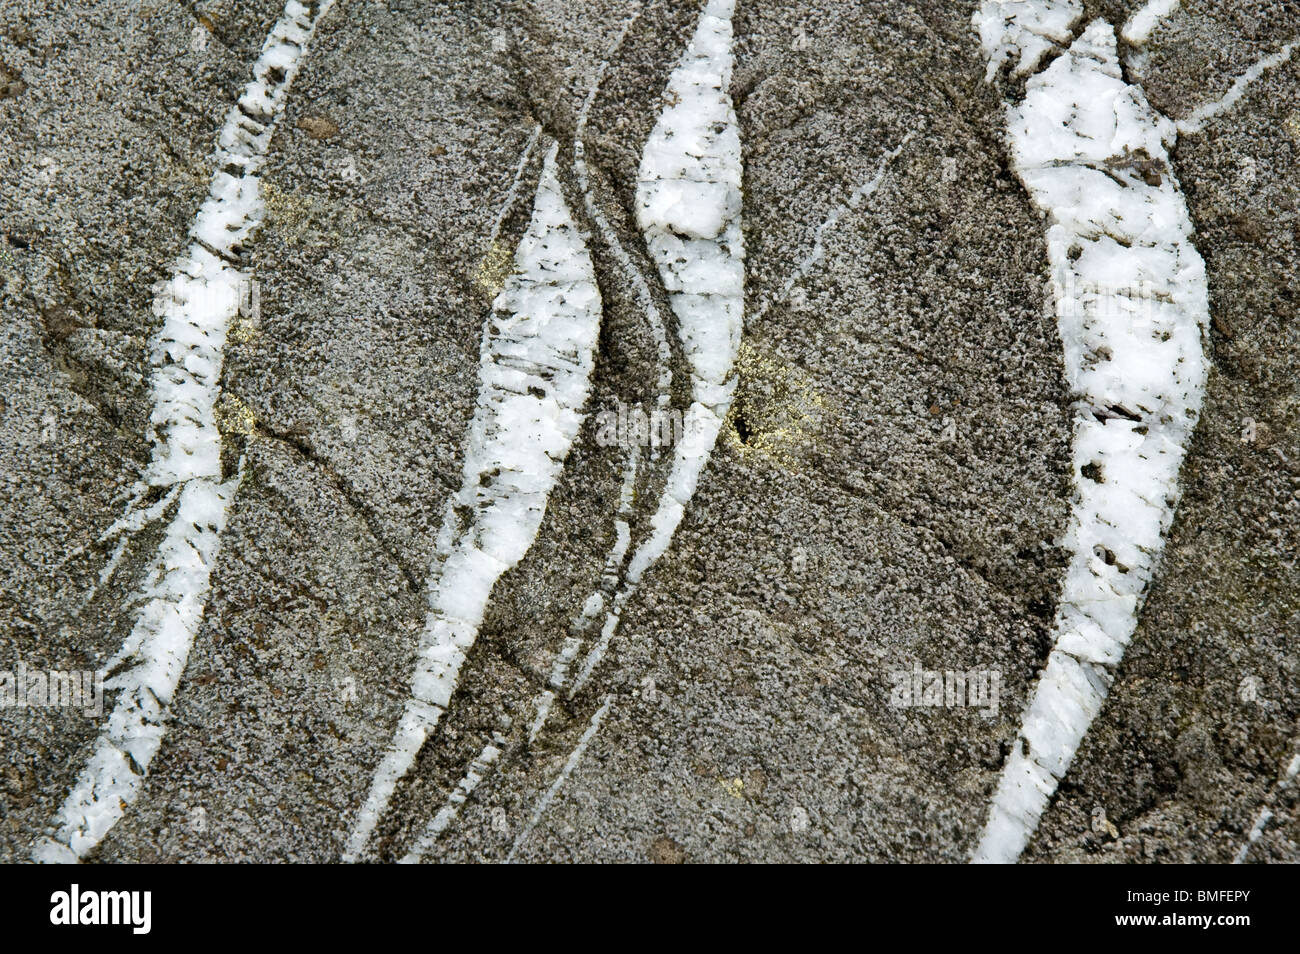 En echelon fractures in a rock, County Kerry, Ireland. Stock Photo